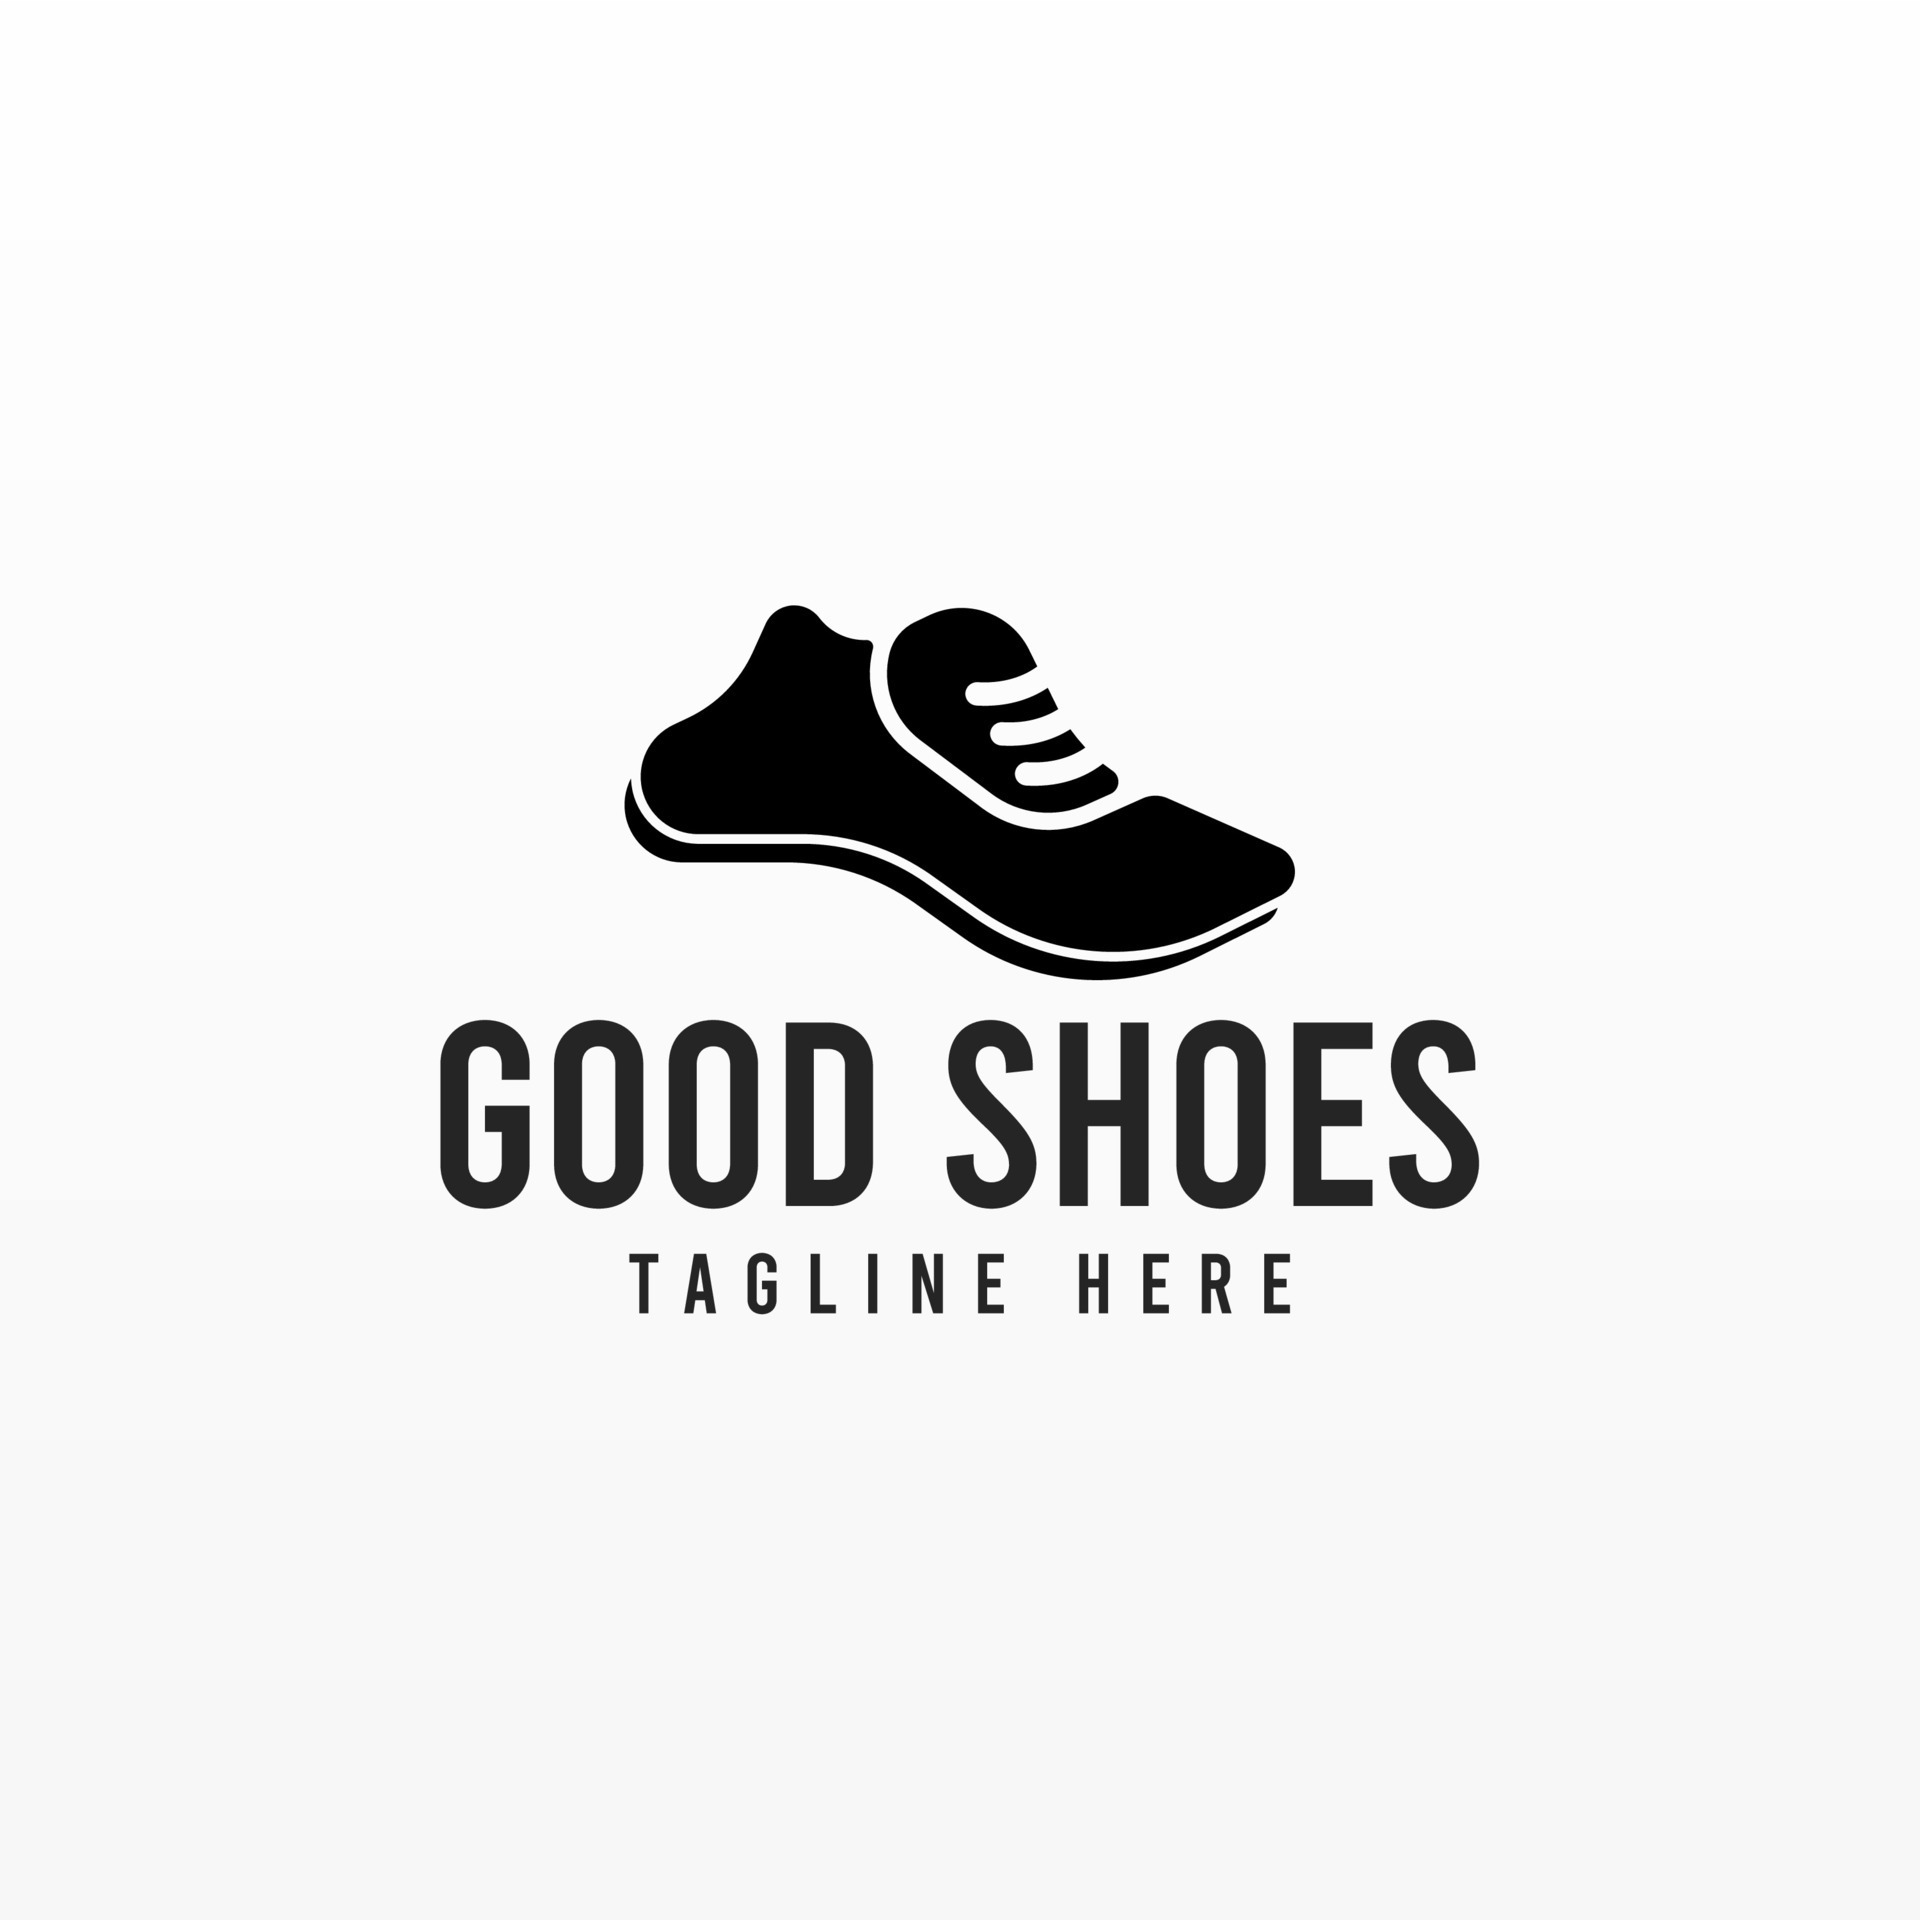 Shoes man fashion logo design 26967784 Vector Art at Vecteezy